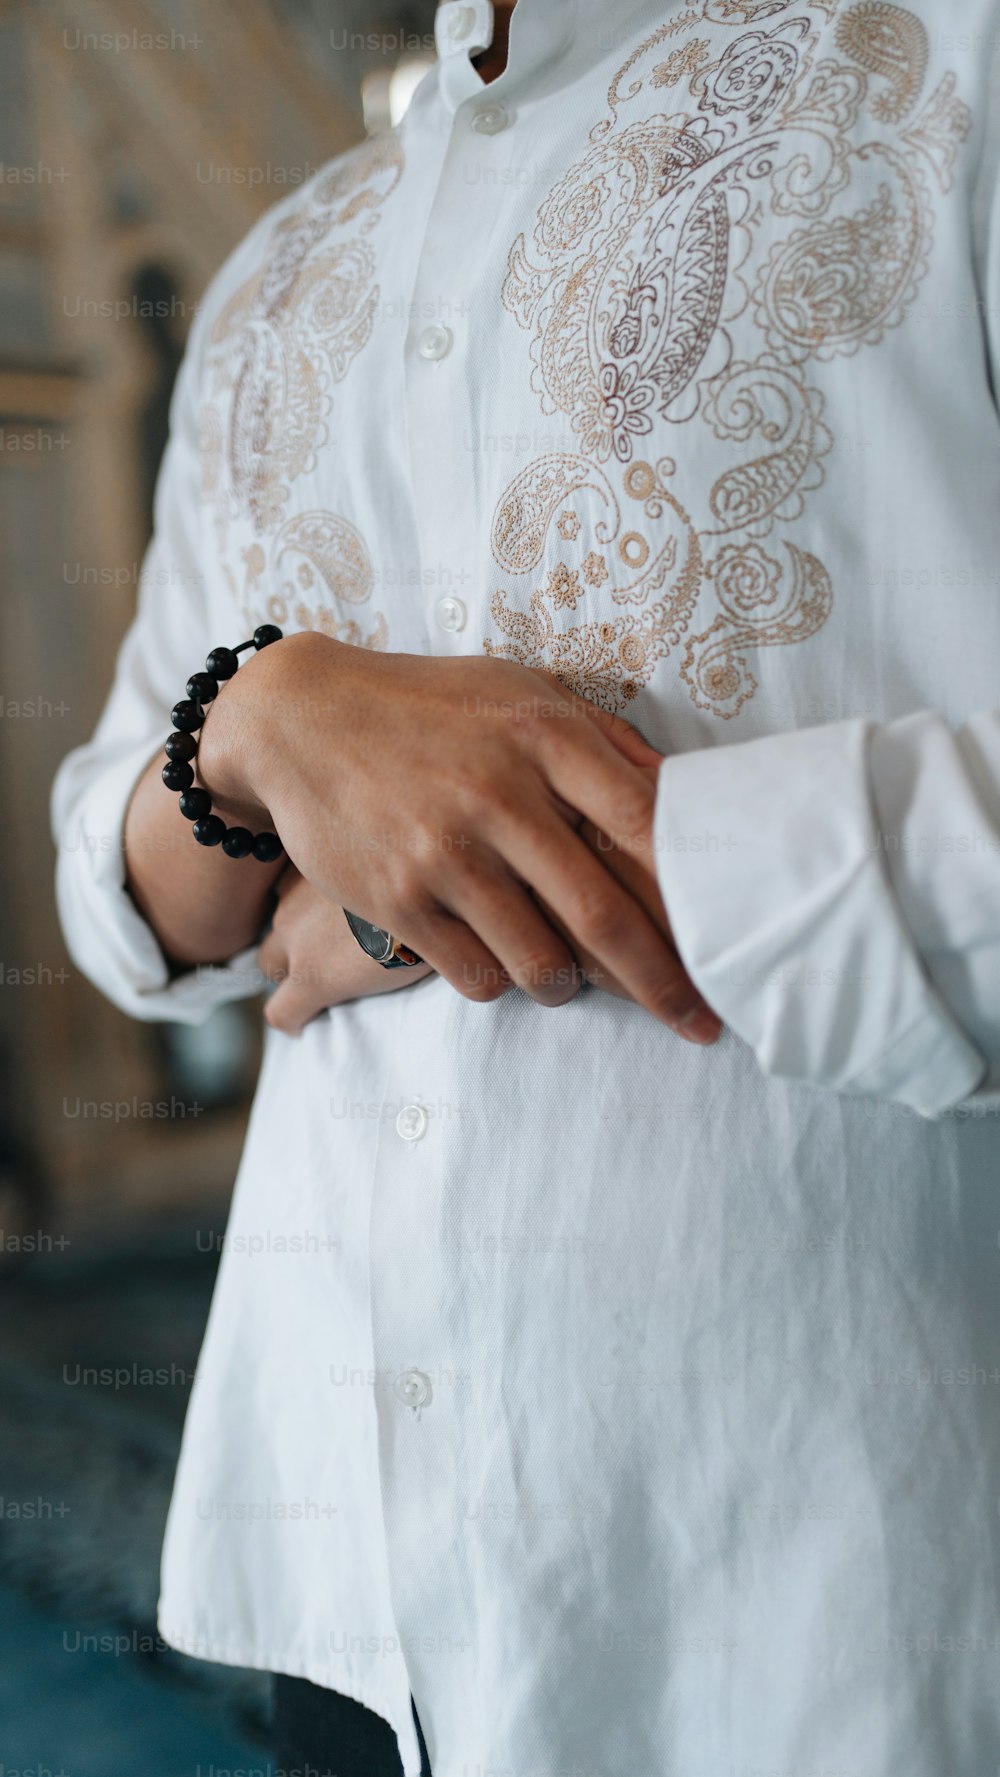 une personne portant une chemise blanche et un bracelet perlé